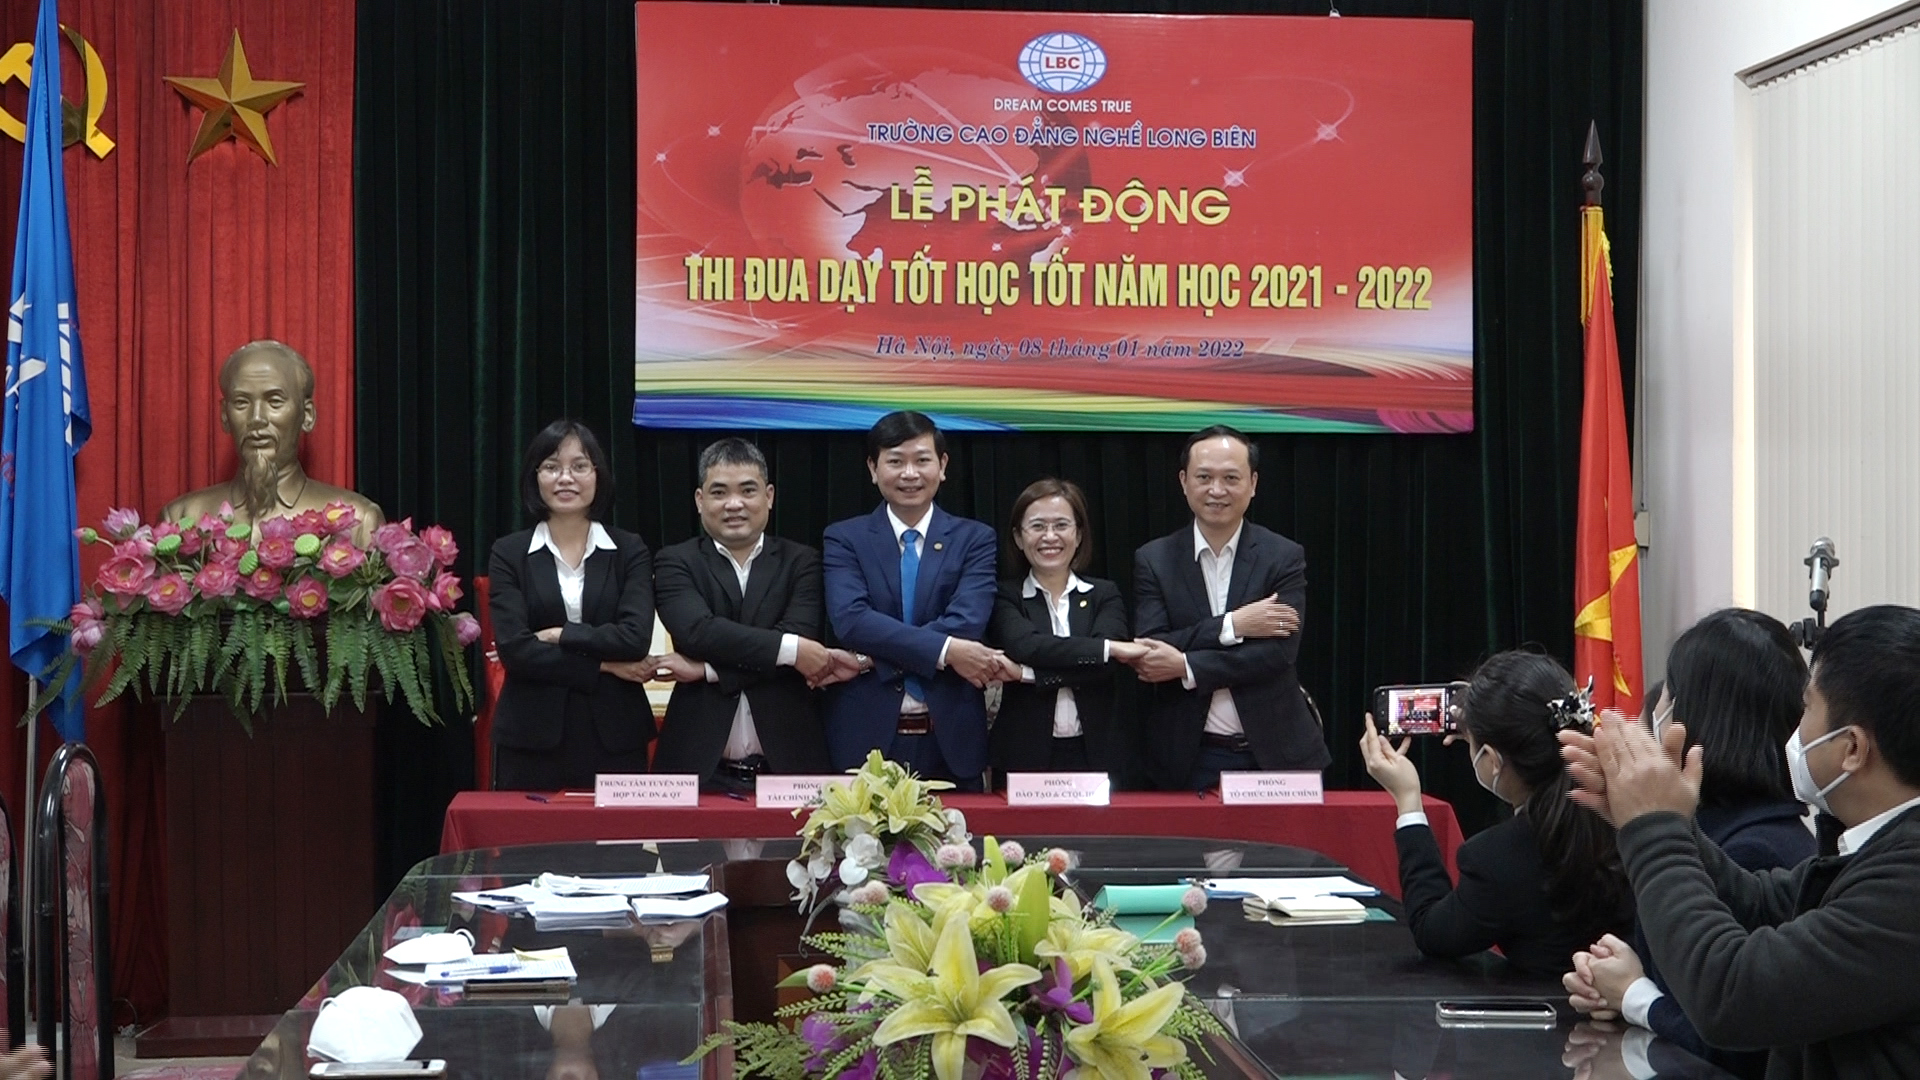 Cao đẳng nghề Long Biên ký kết giao ước thi đua năm 2022